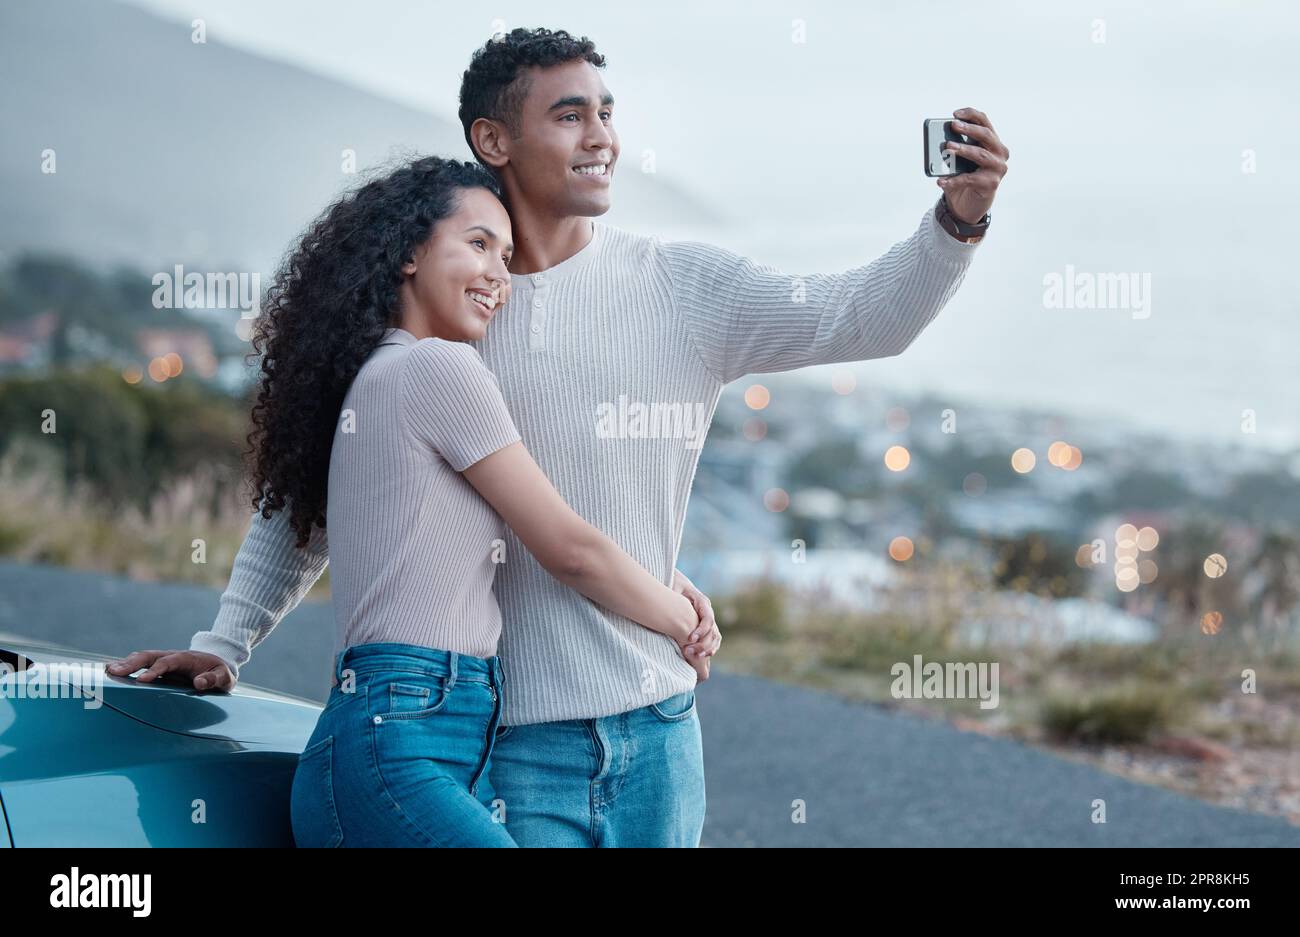 Faisons des souvenirs partout où nous allons. Photo d'un jeune couple prenant un selfie pendant un voyage en voiture ensemble. Banque D'Images